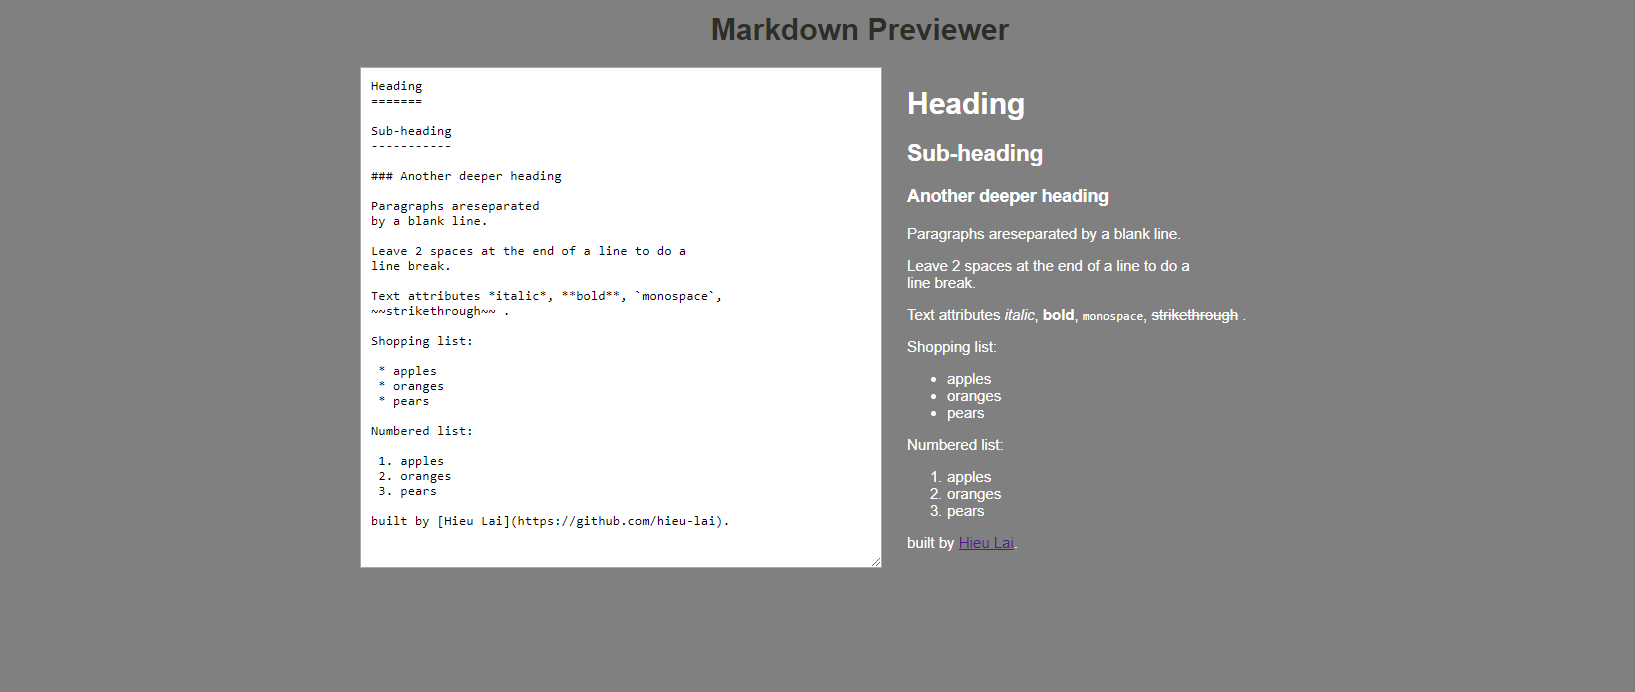 markdown-previewer_screenshot